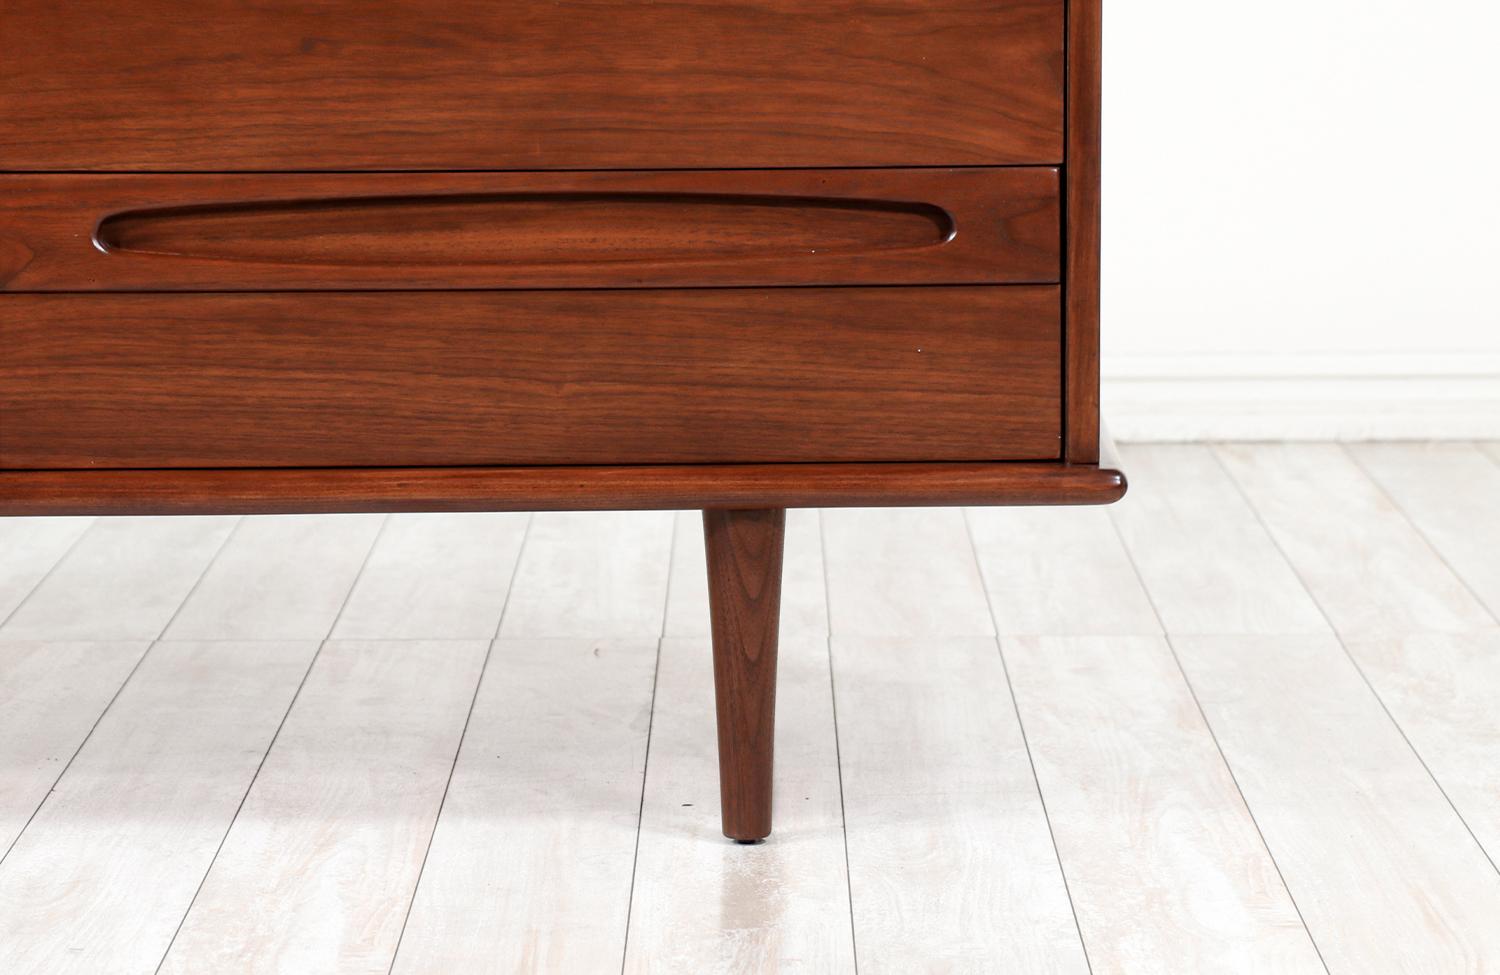 Walnut Mid-Century Modern 9-Drawer Dresser by American of Martinsville